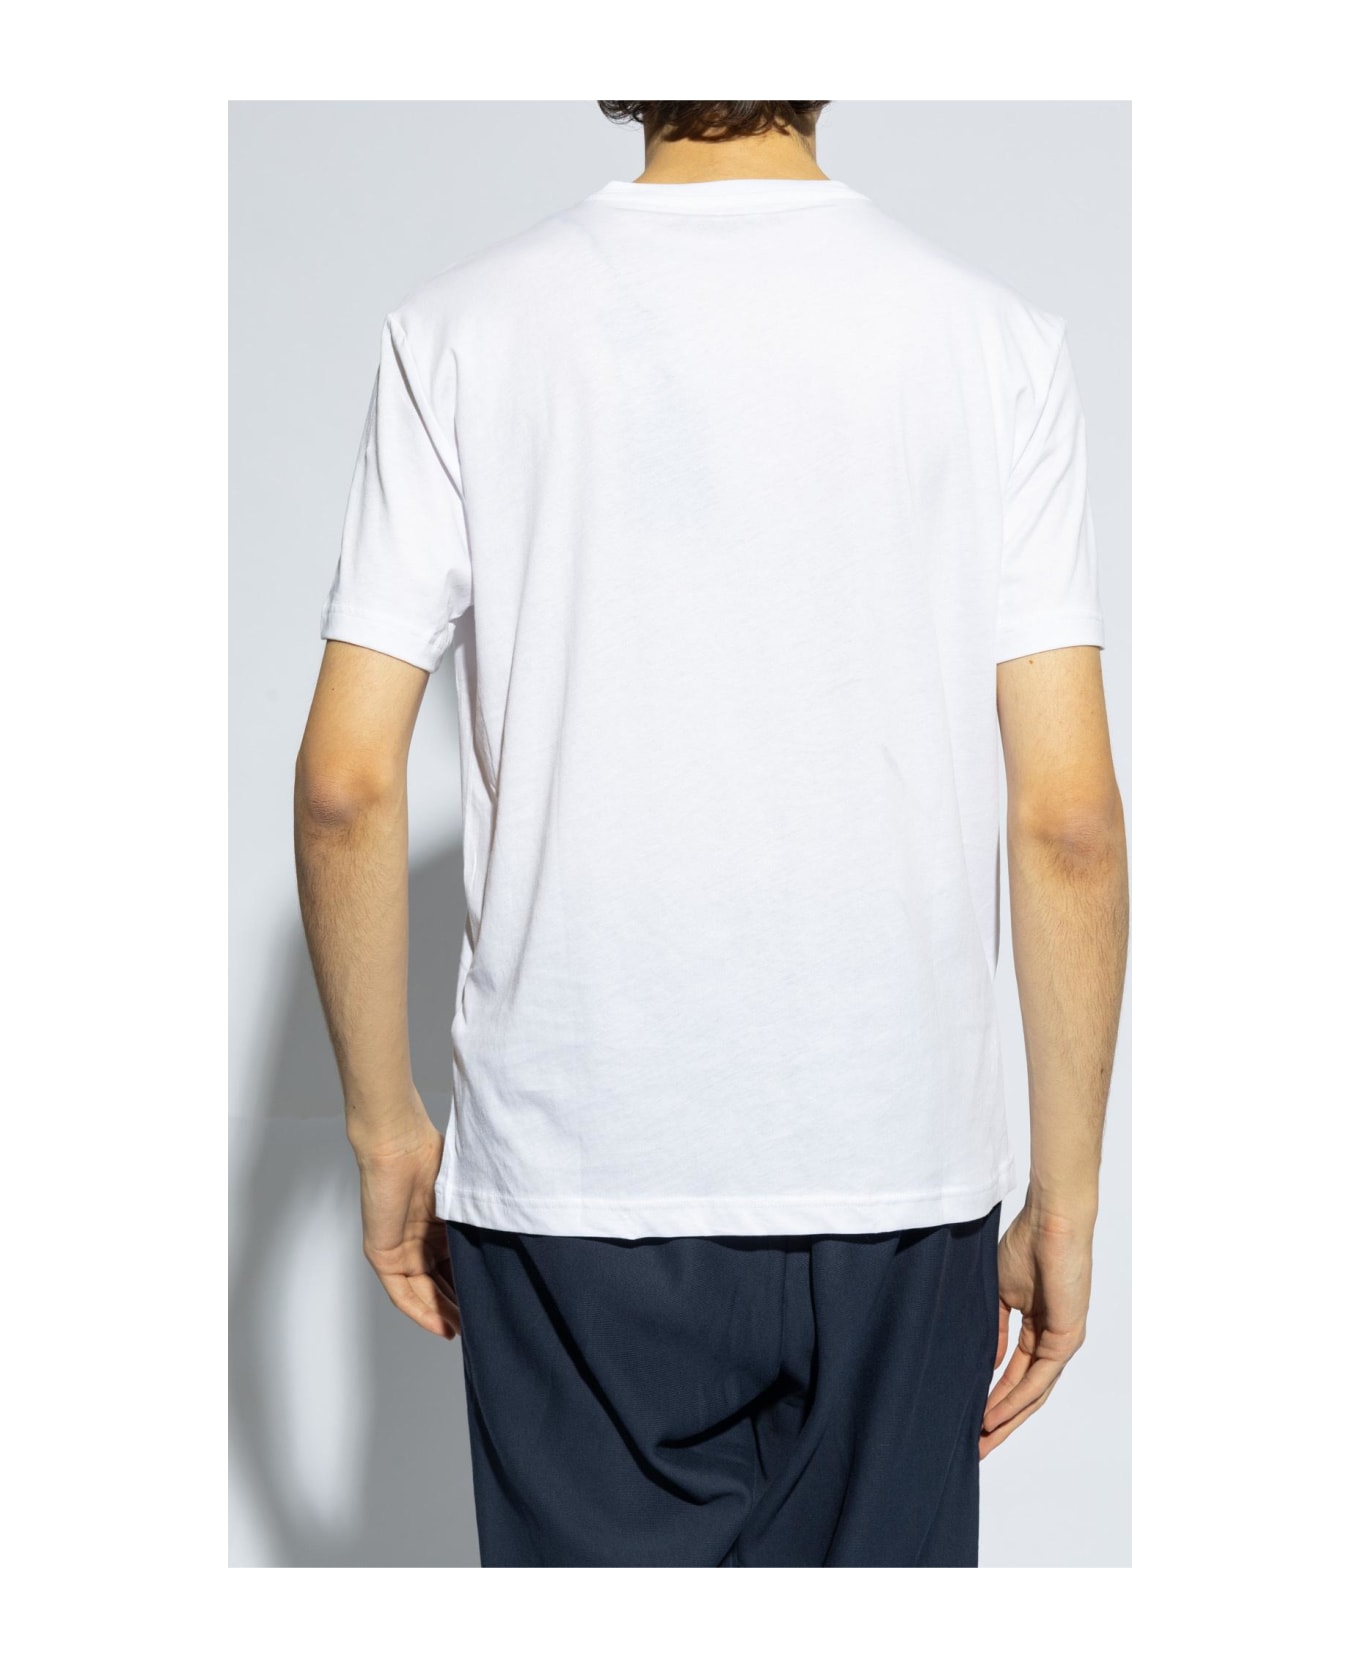 EA7 Emporio Armani T-shirt With Logo - White